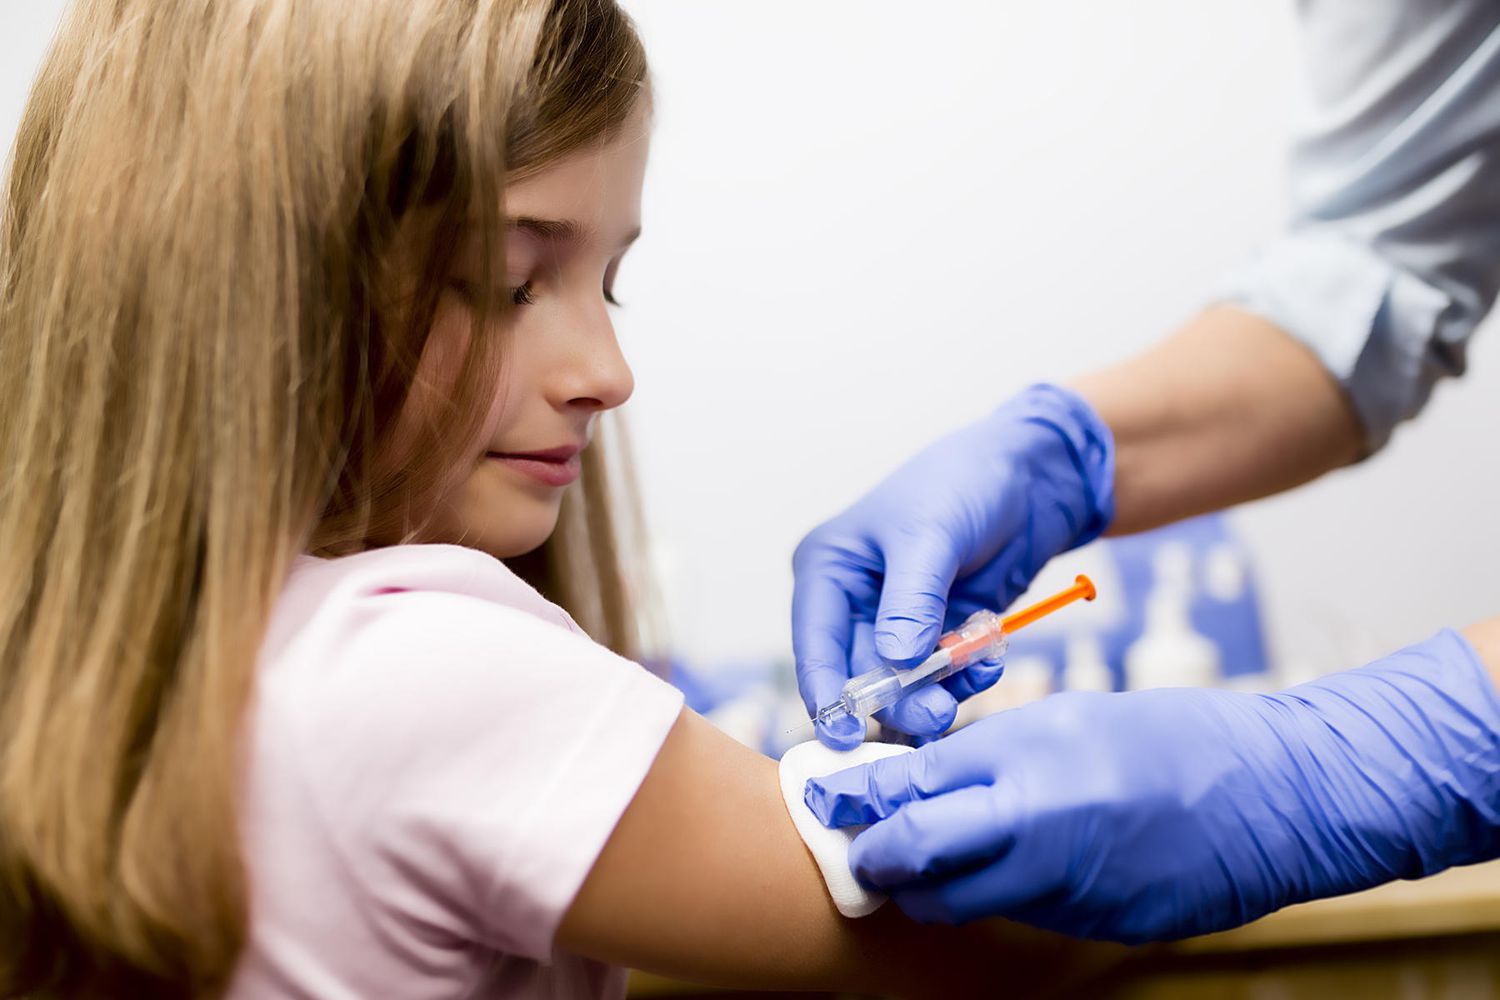 tween girl getting vaccine shot